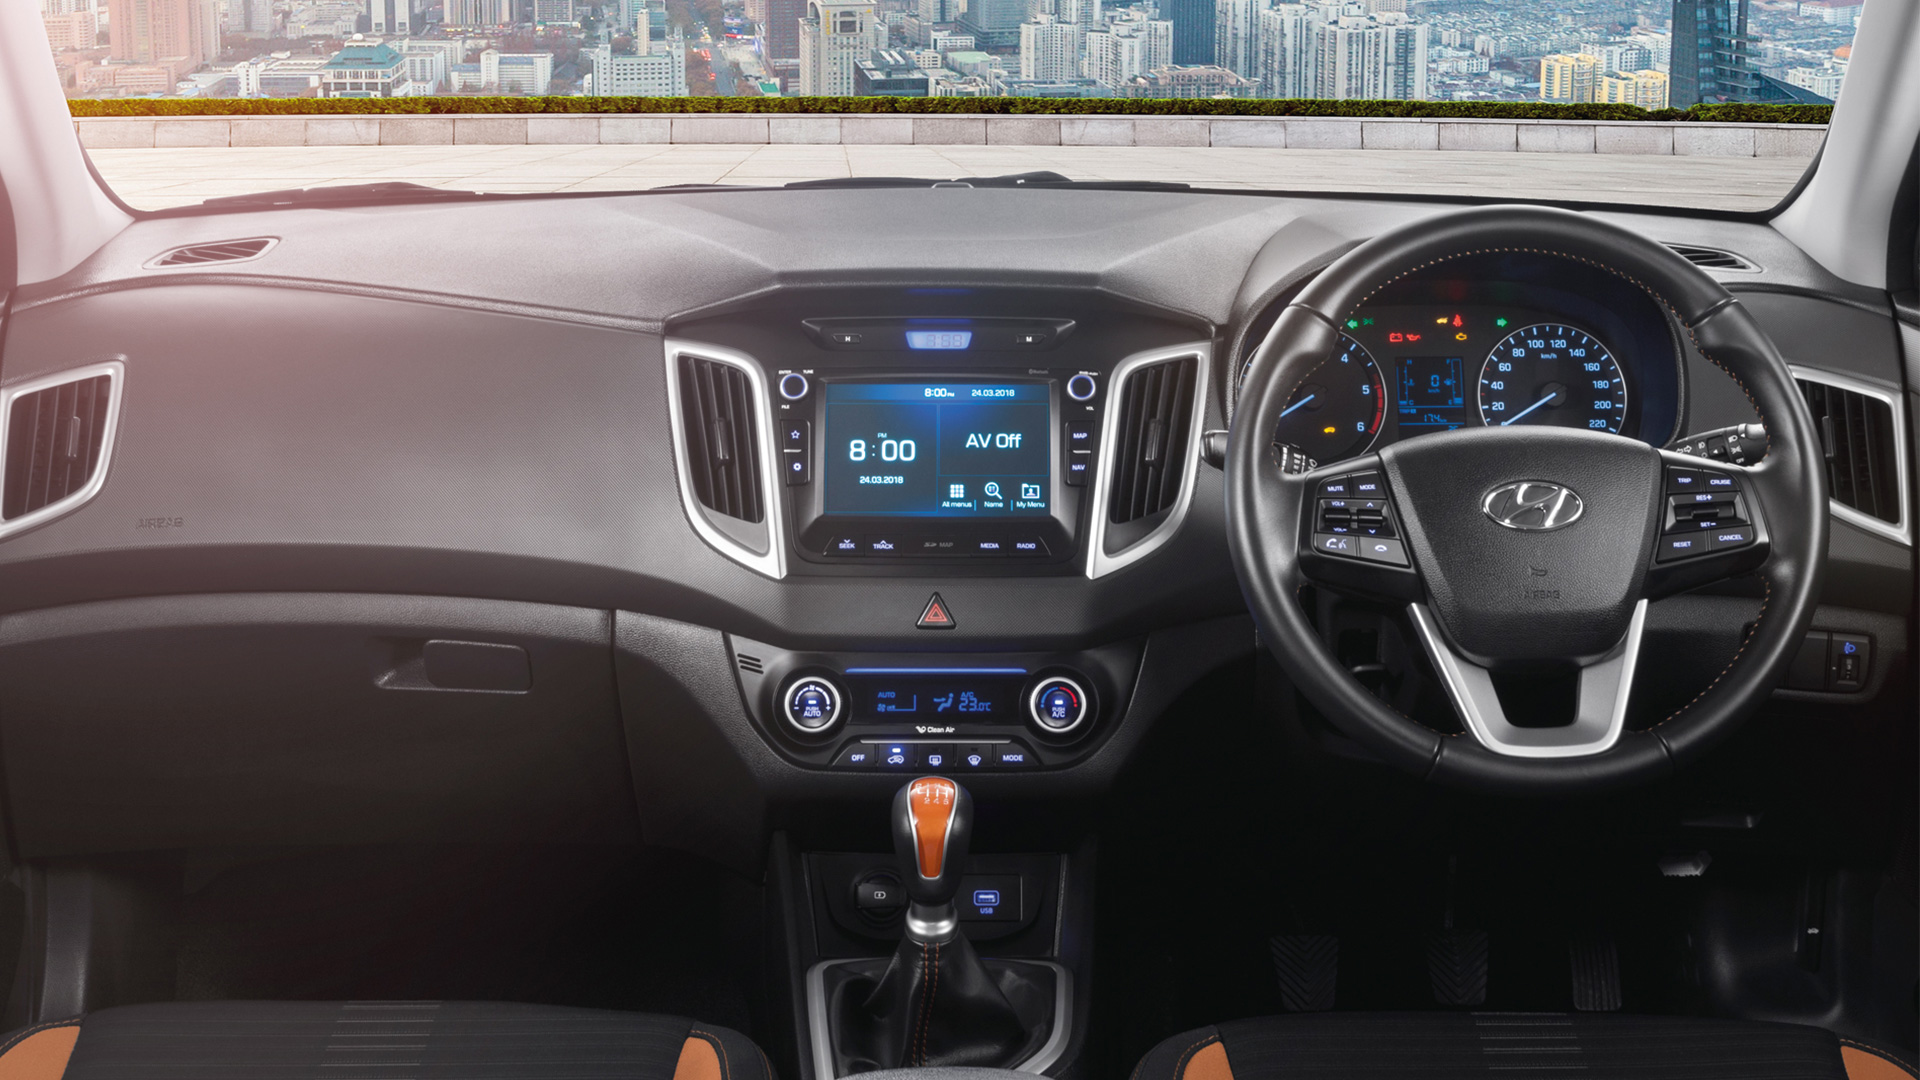 Hyundai Creta 2020 Price Mileage Reviews Specification